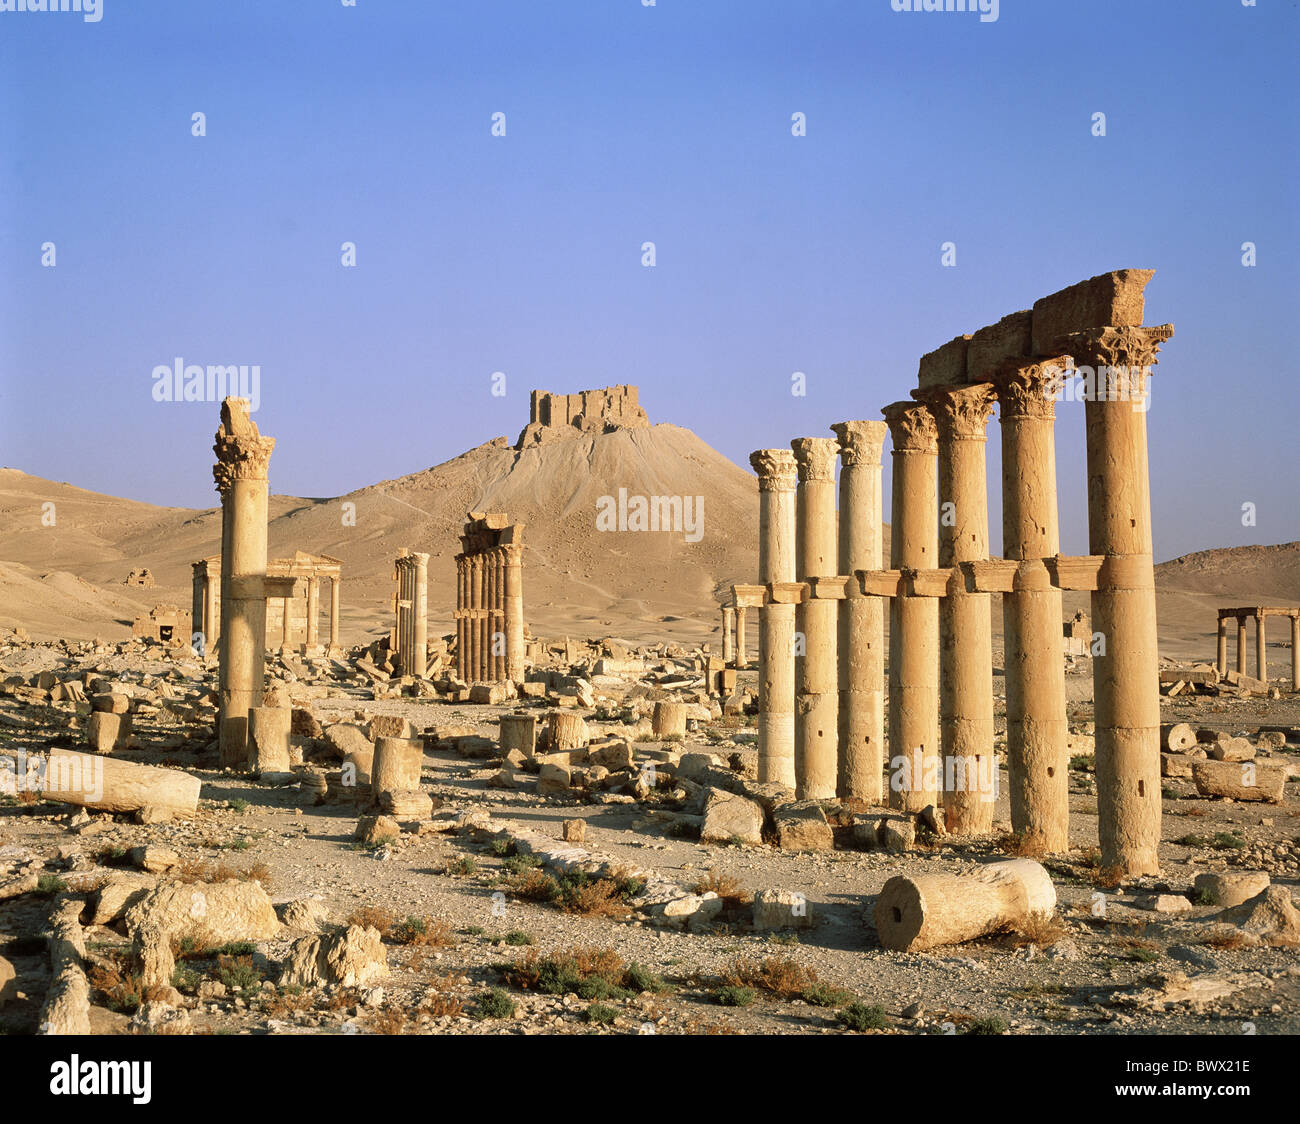 Forteresse arabe hill colonades ruines Palmyre Syrie monde antique l'antiquité Banque D'Images